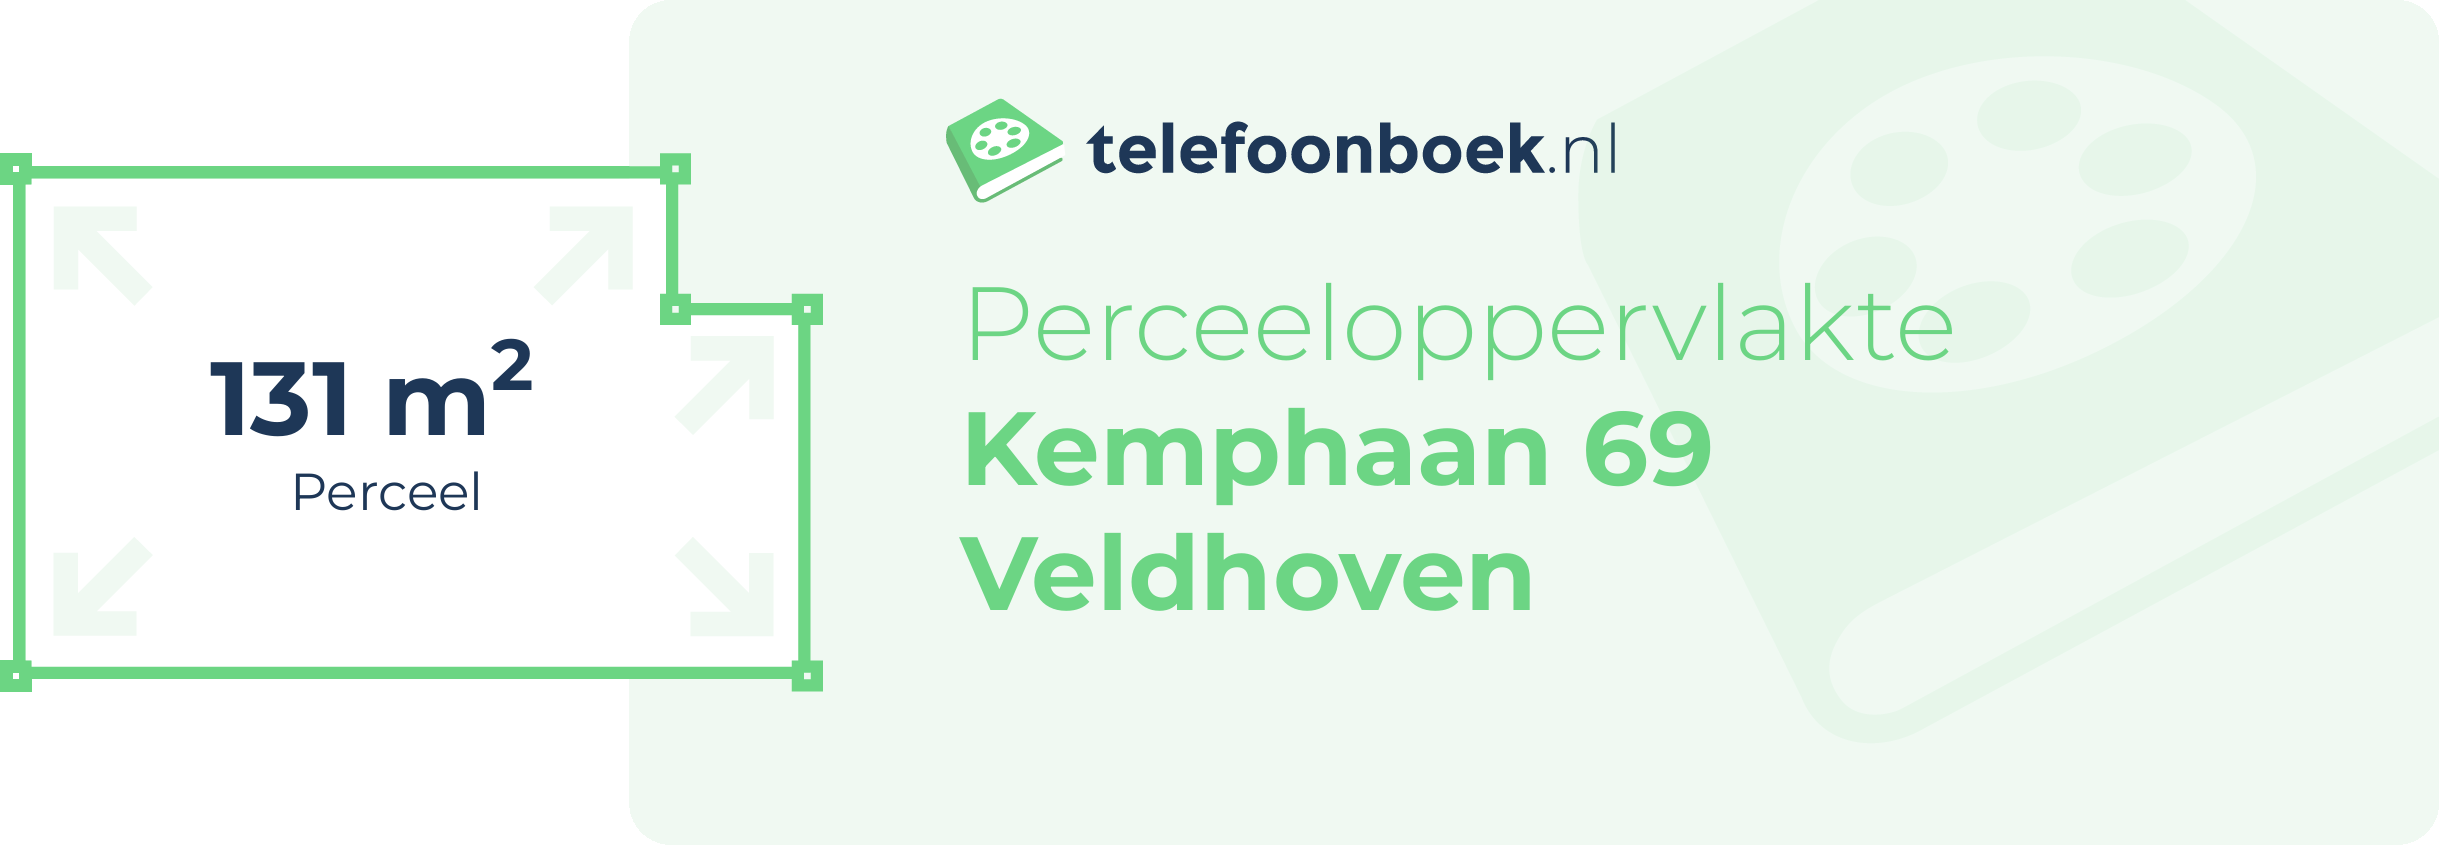 Perceeloppervlakte Kemphaan 69 Veldhoven